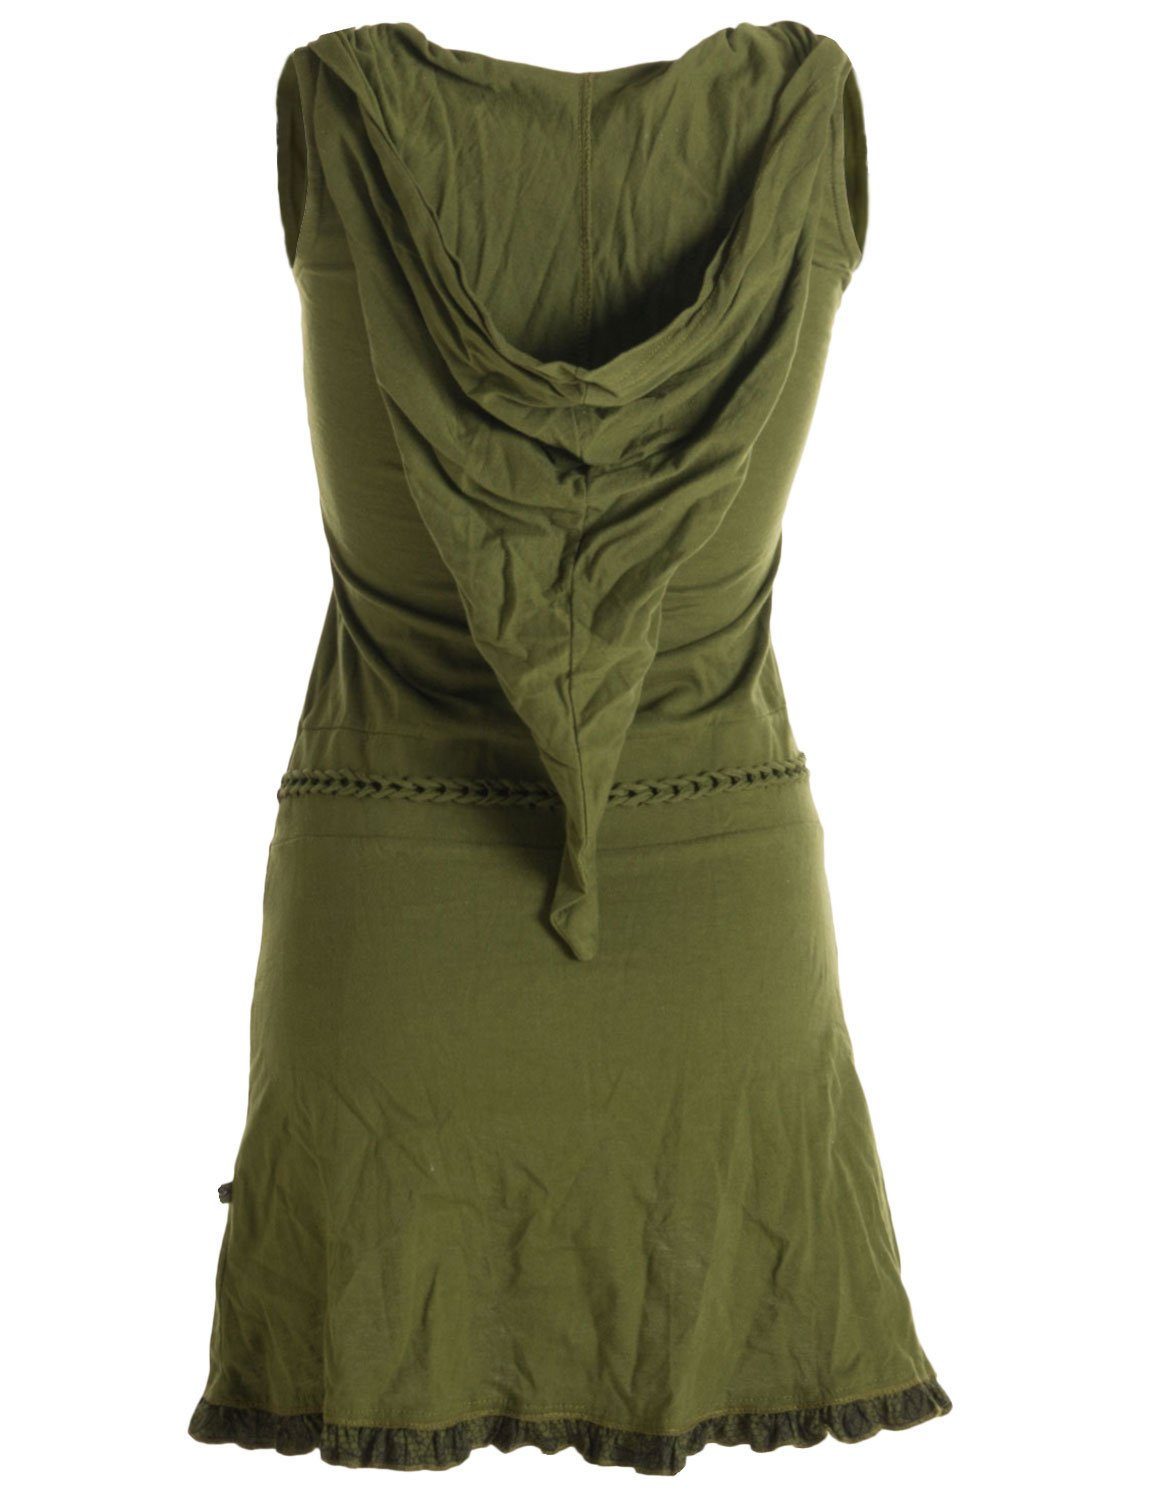 Baumwollkleid mit Zipfelkleid Zipfelkapuze Asymmetrisches Lagenlook und Rüschen, olivegrün Vishes Flechtwerk